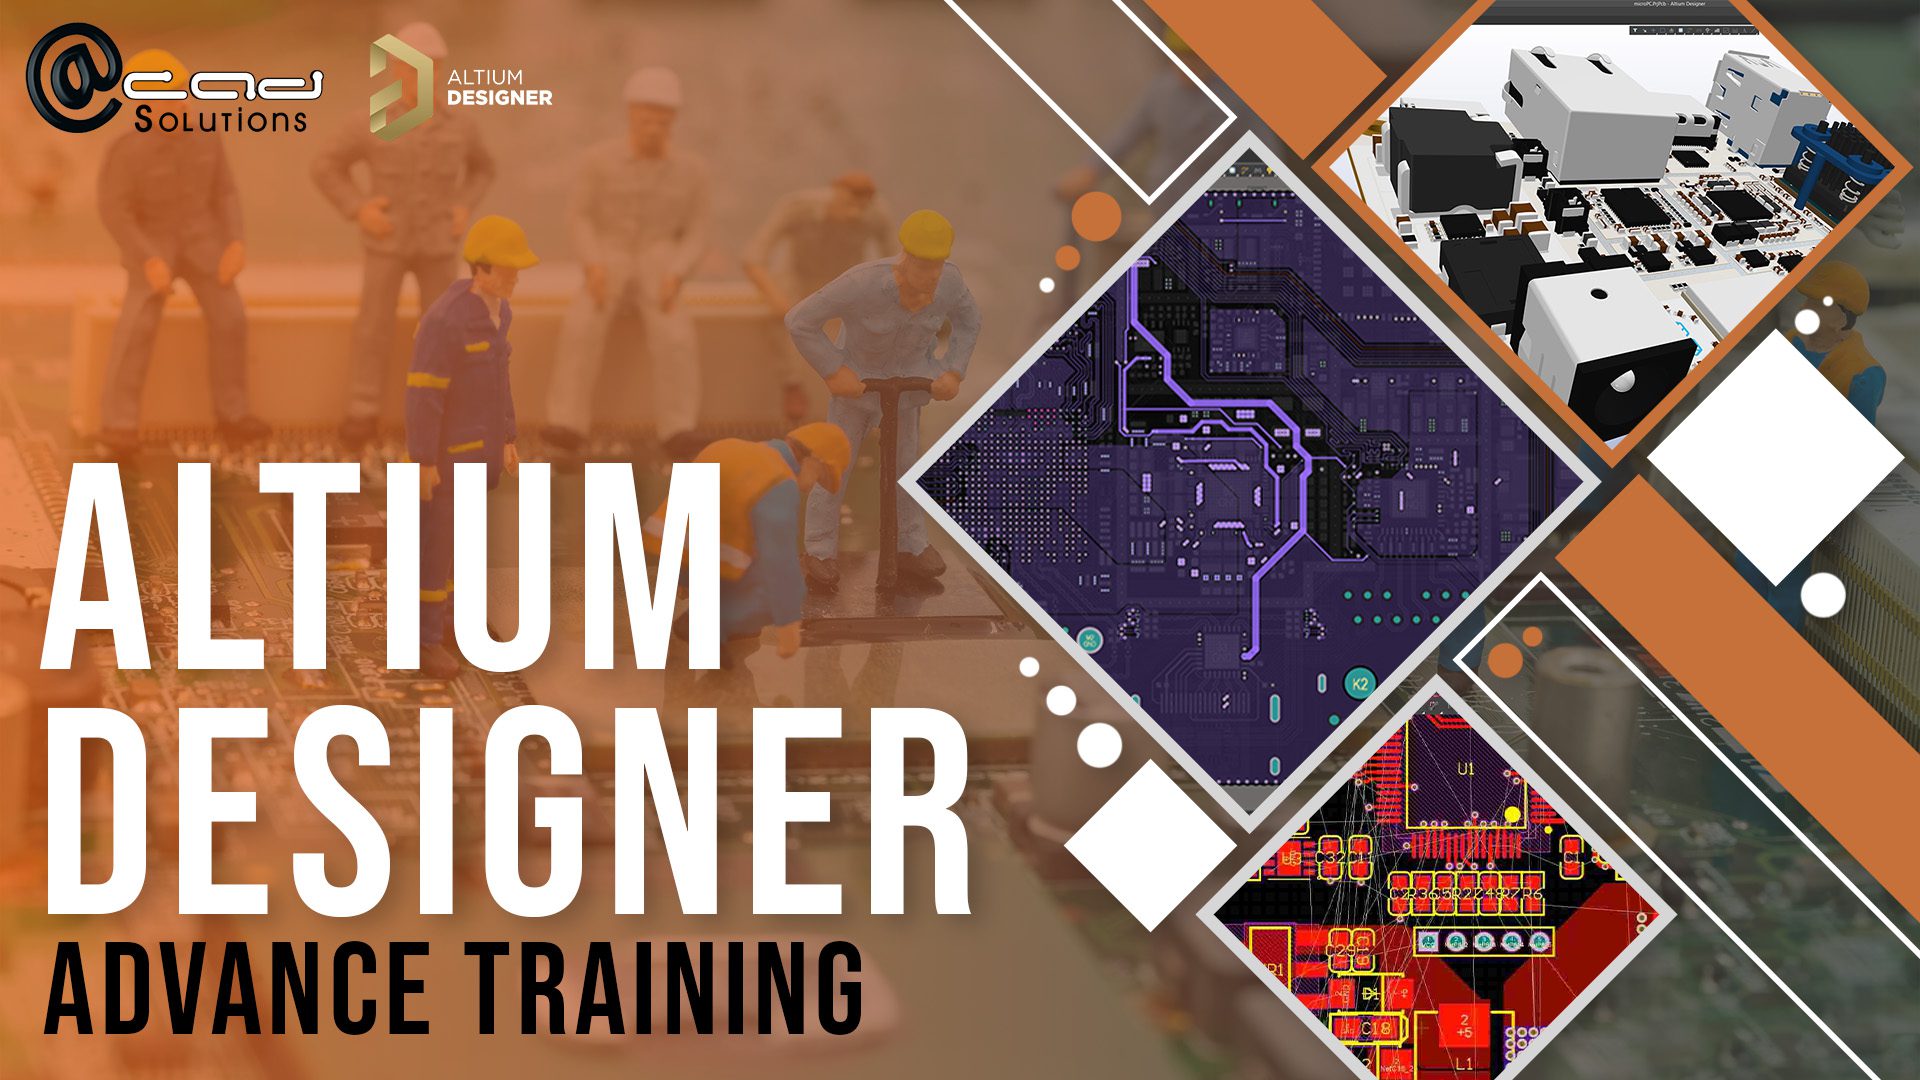 Altium Designer Advance Training Website Poster